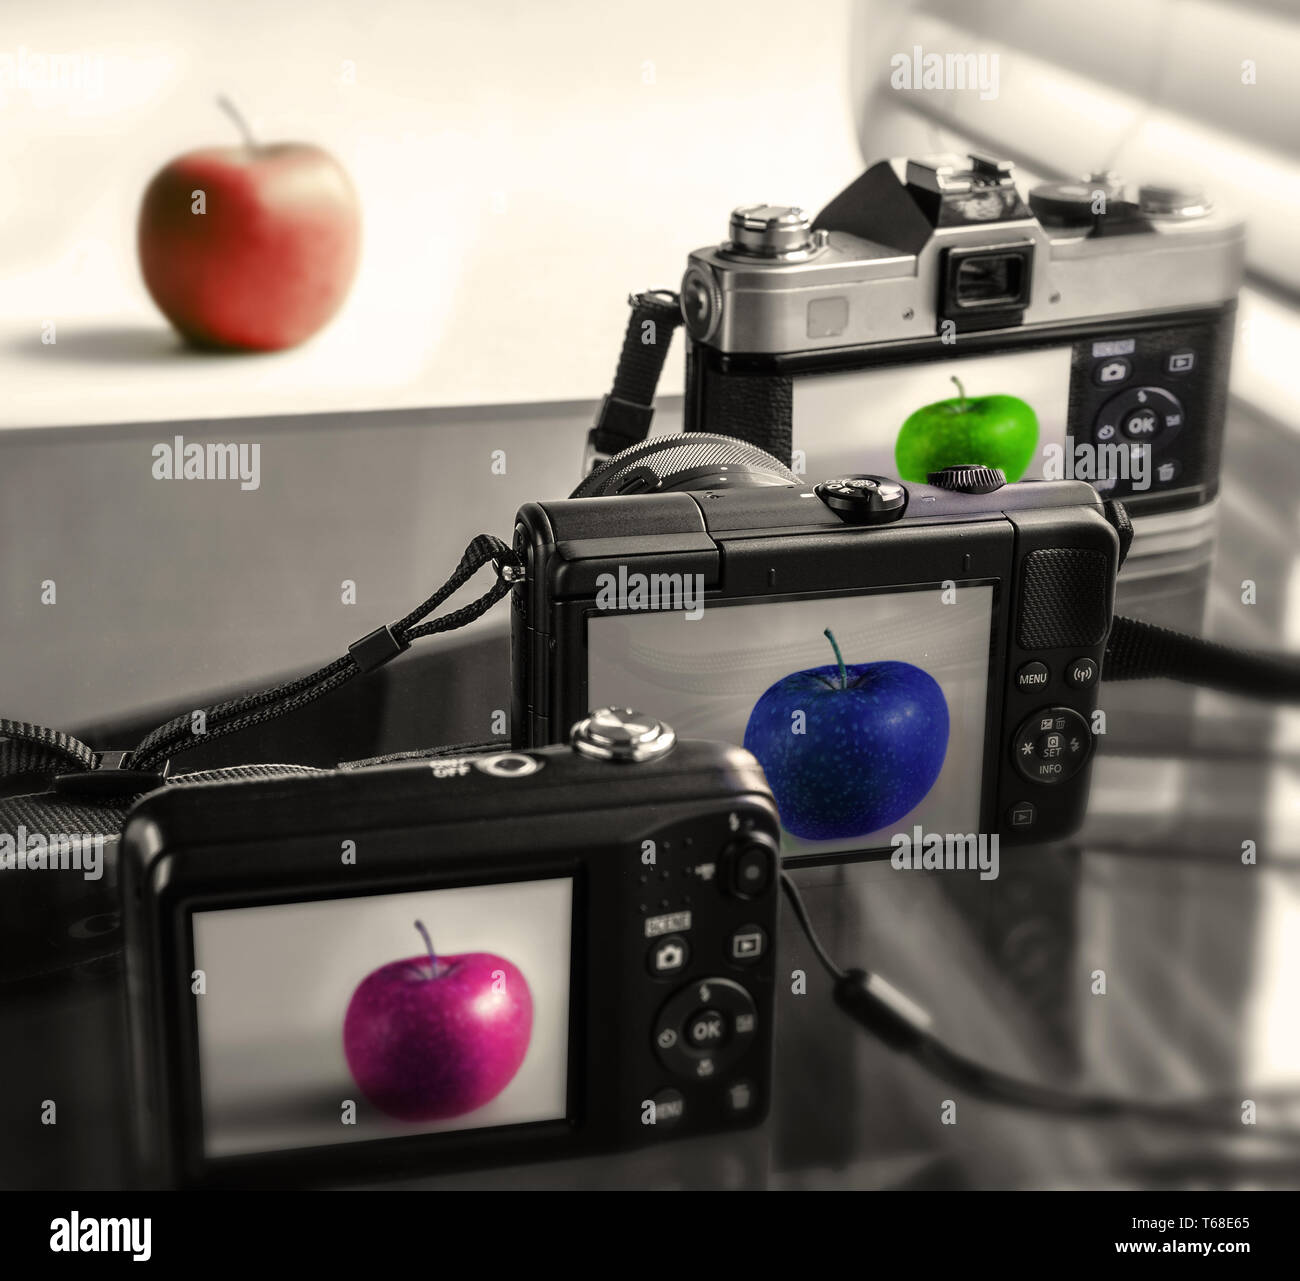 Trois caméras présentant l'image de la pomme (en face), aucun n'est fidèle à l'original. Concept. Banque D'Images